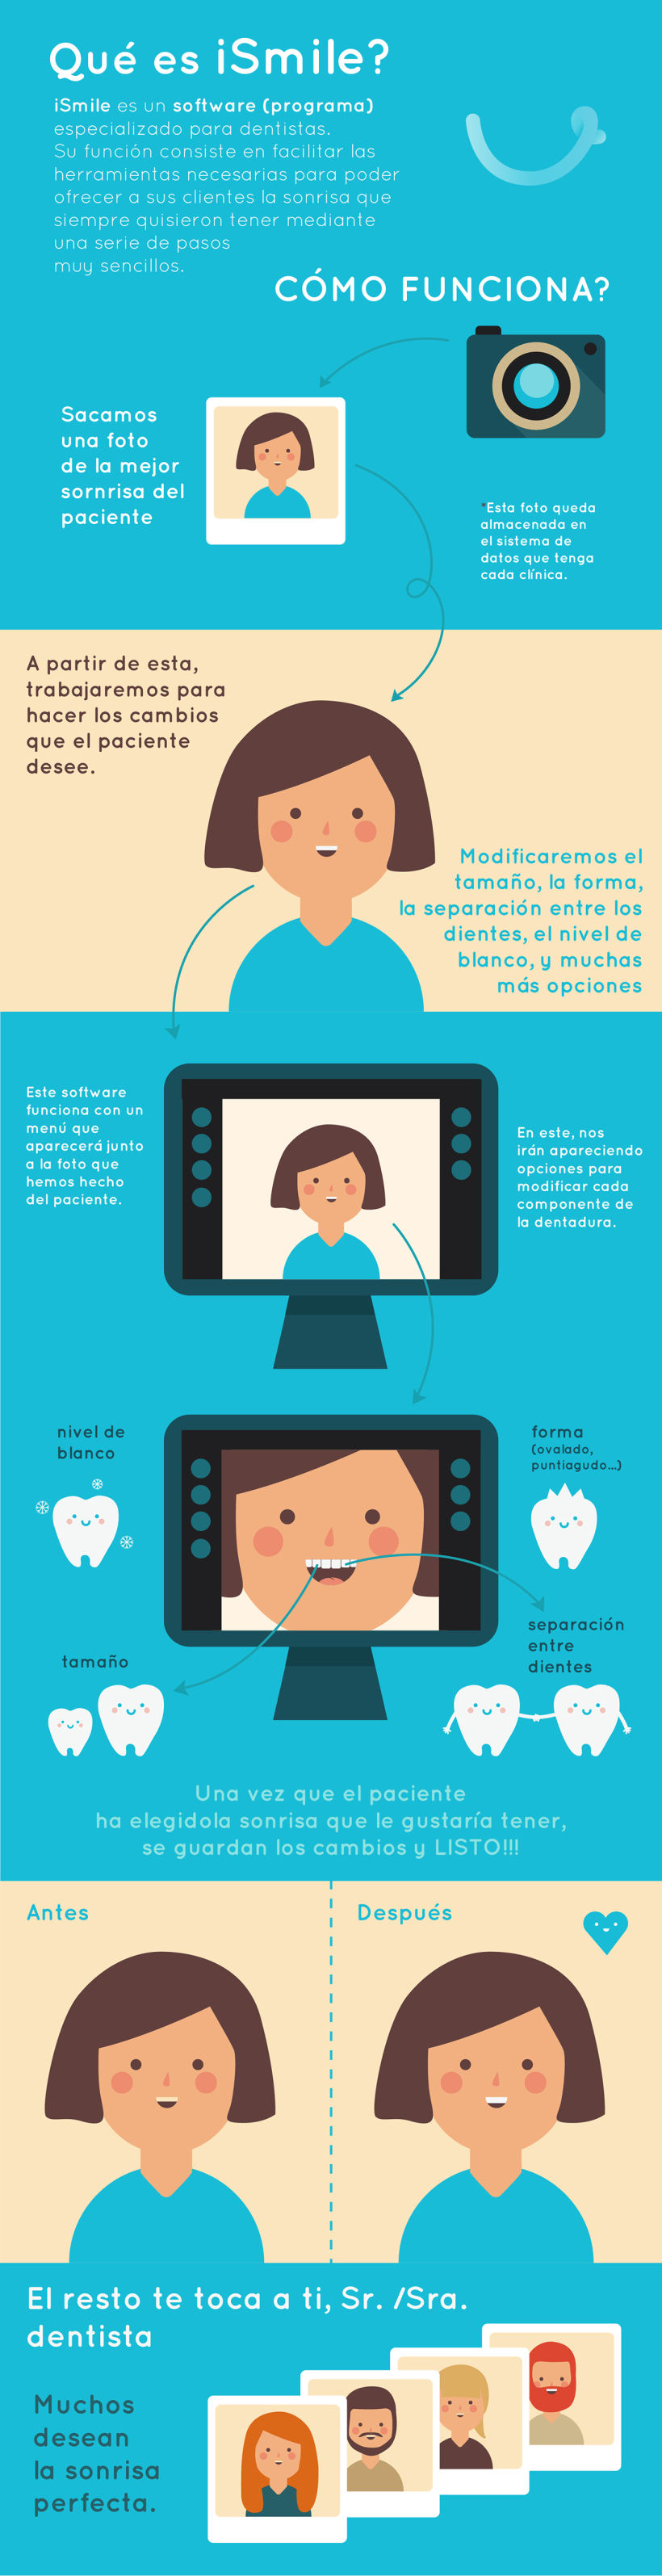 Infografía para explicar el software "iSmile" a empresas de odontología -1